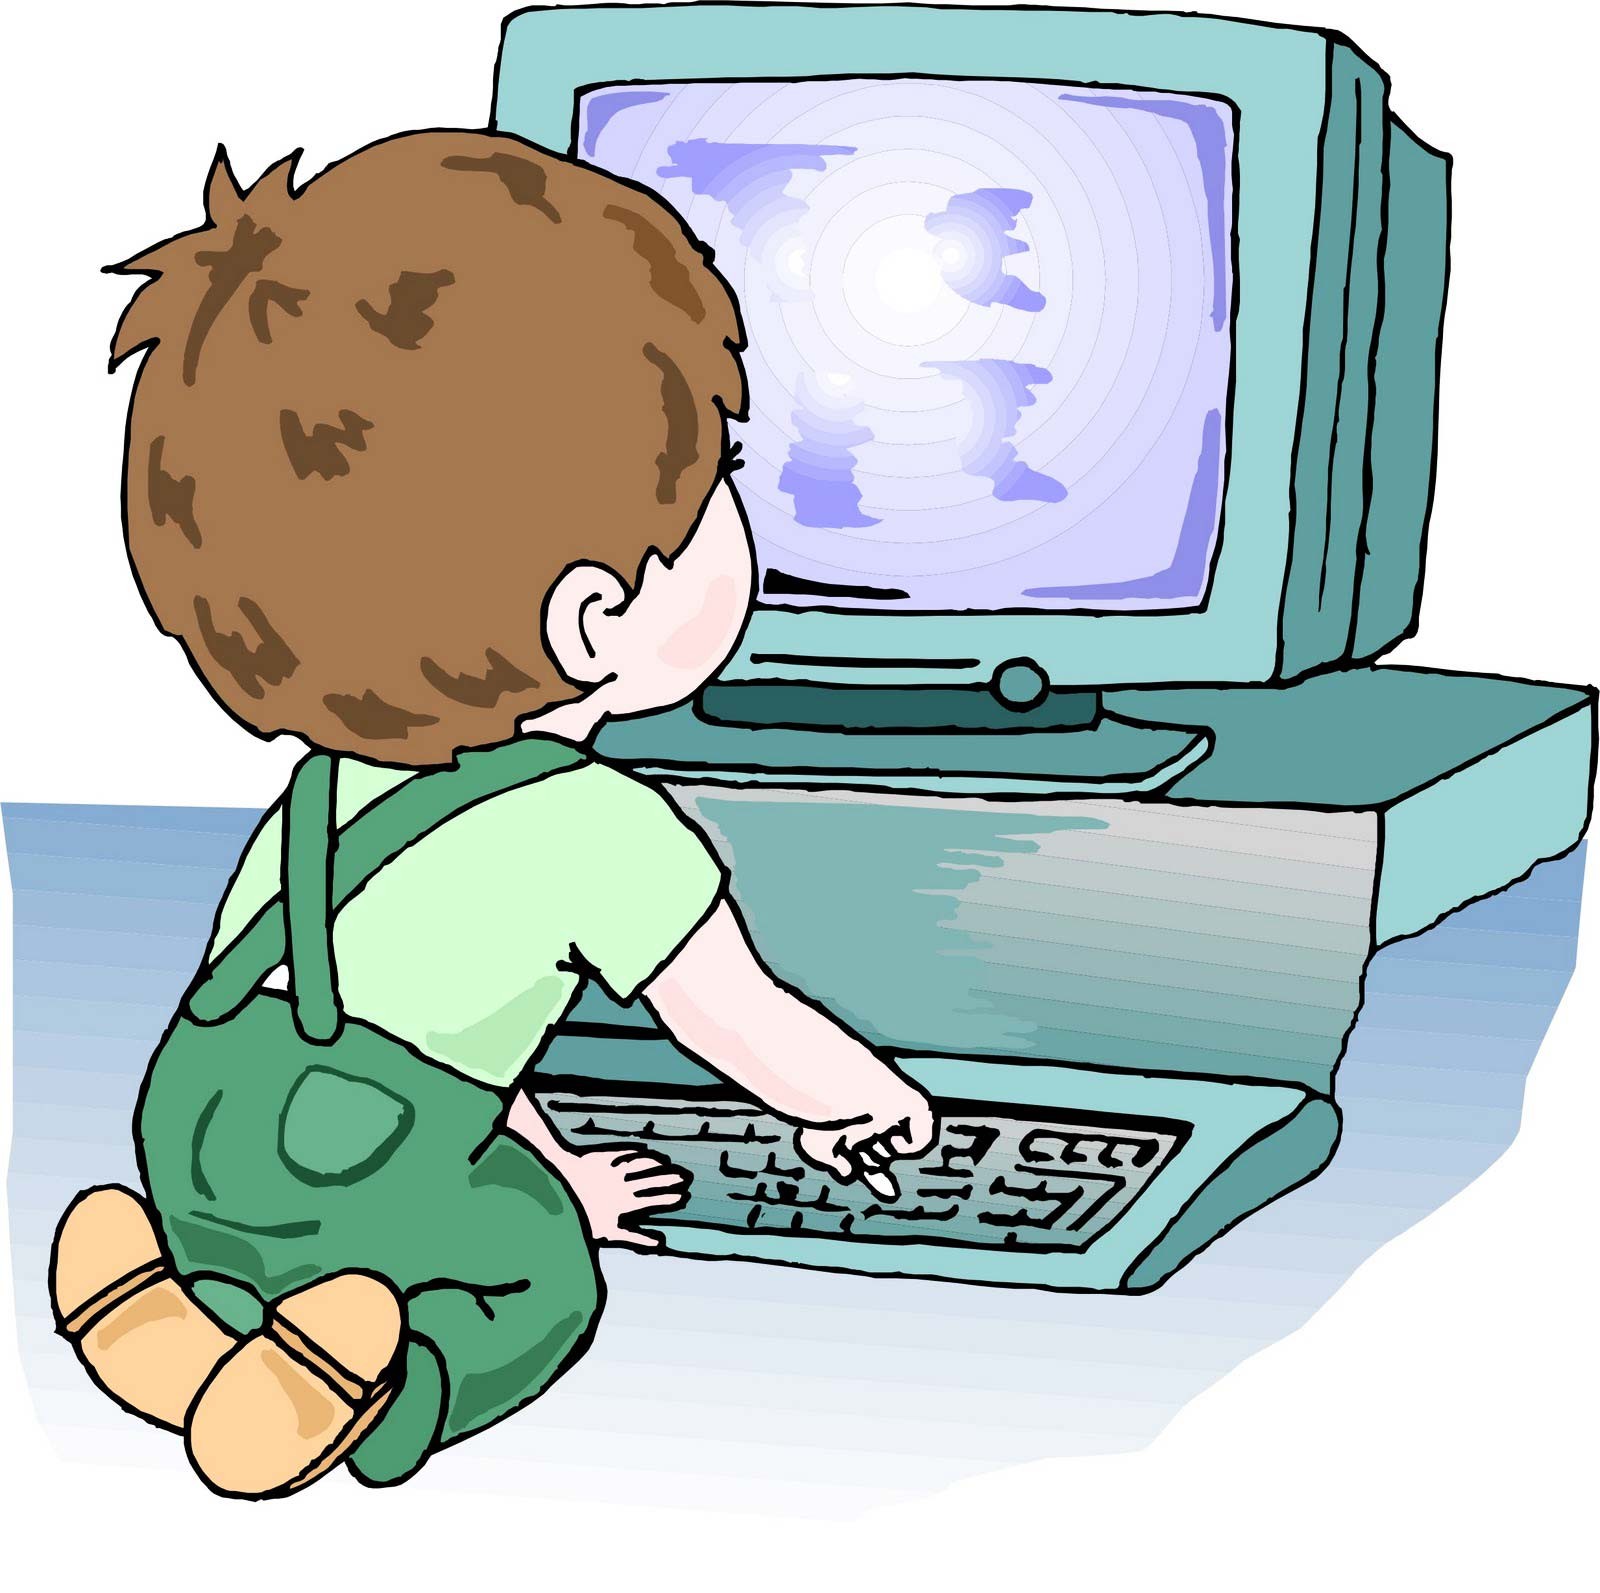 Компьютер дети здоровье. Компьютер для детей. Компьютер иллюстрация. Дошкольник и компьютер. Дети компьютер иллюстрация.